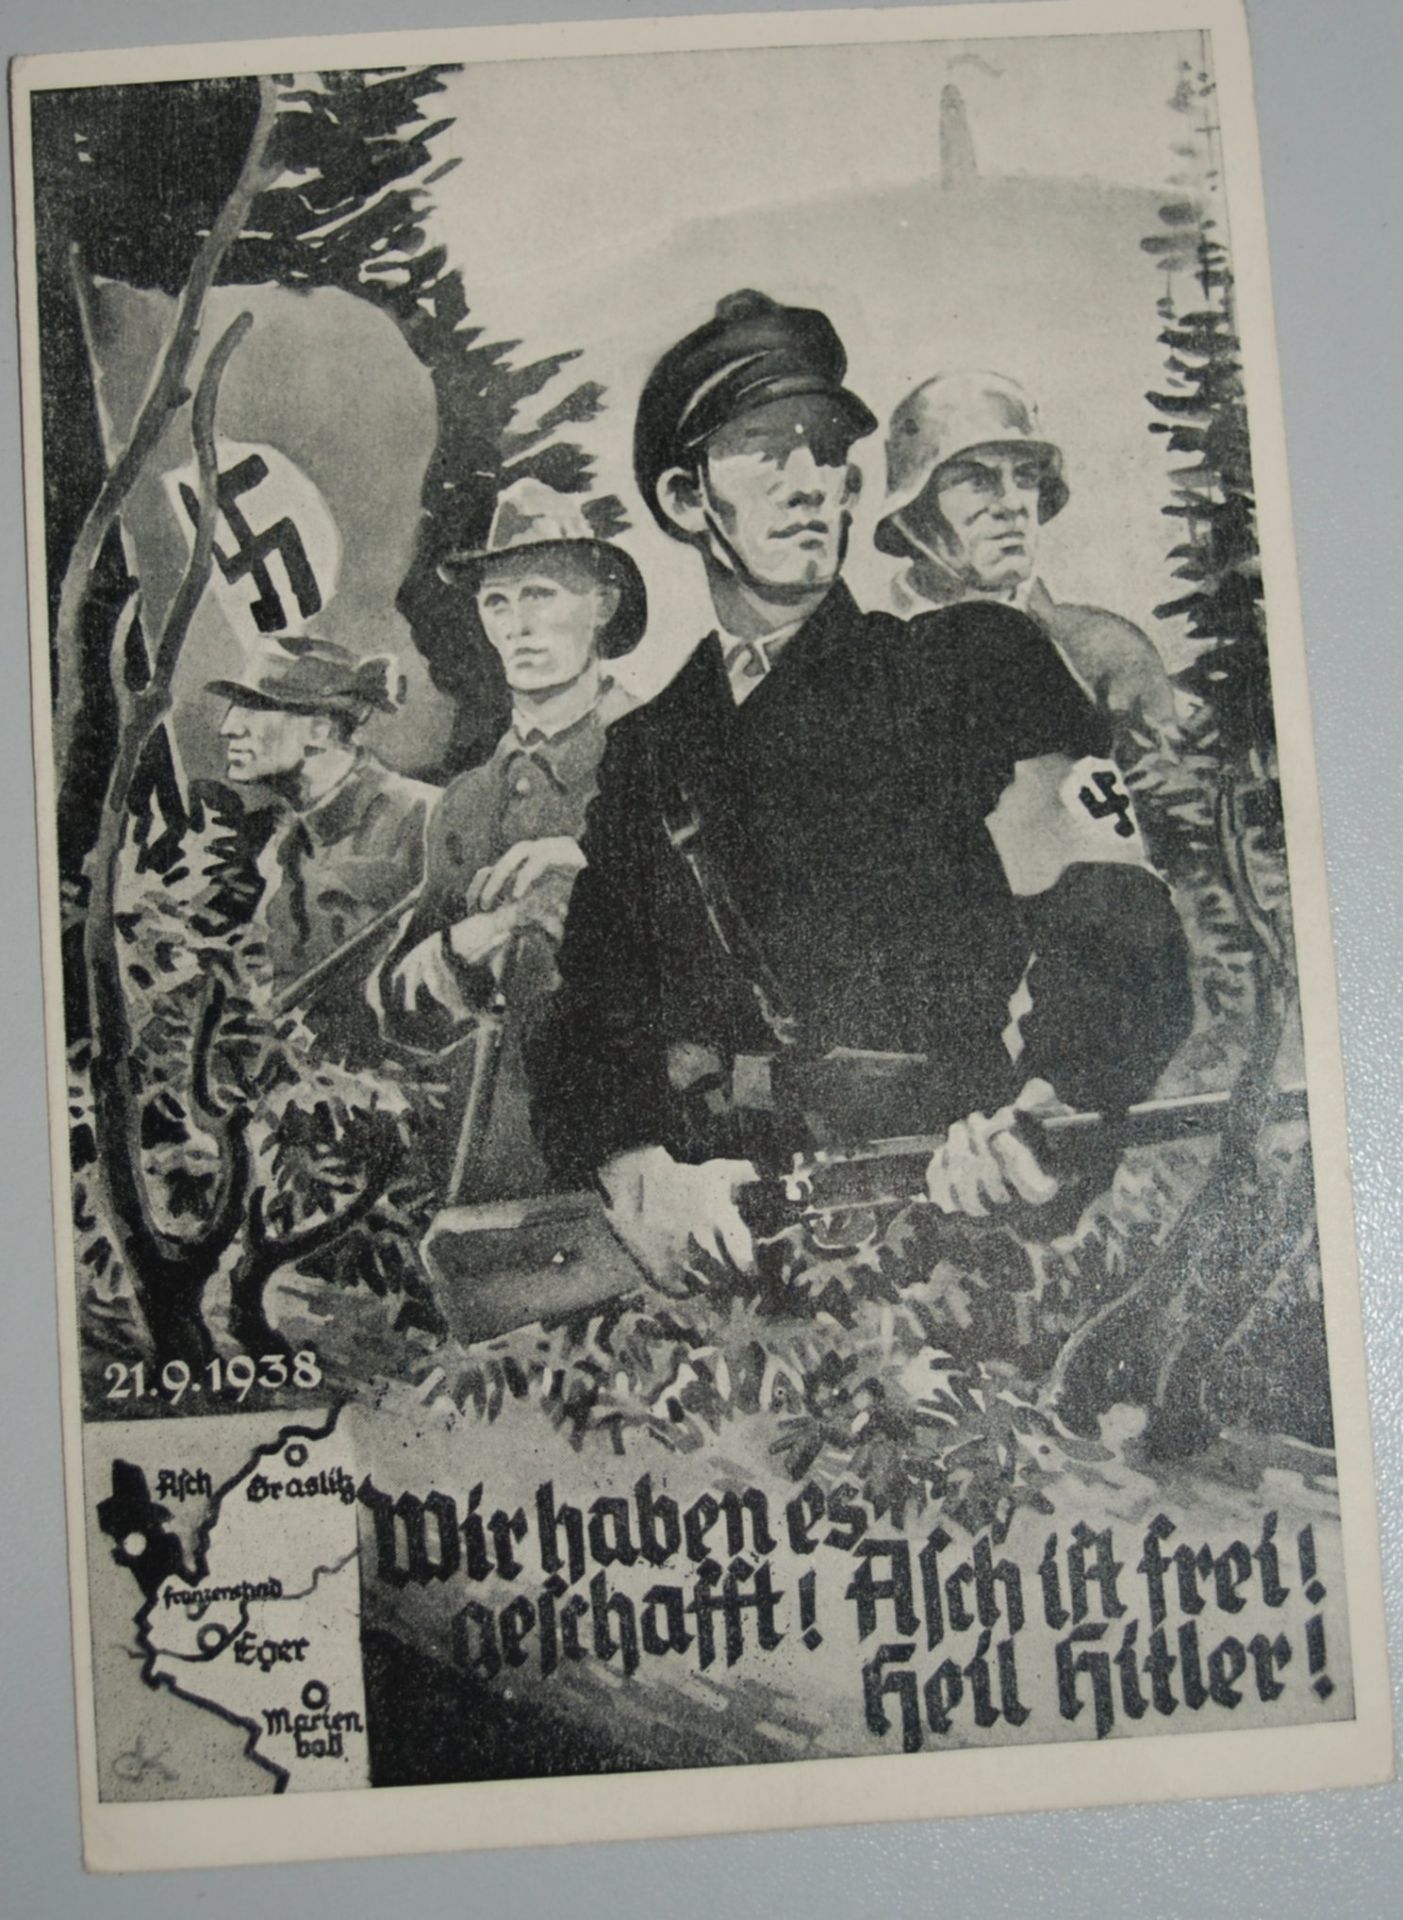 Postkarte "Asch ist frei" mit Sonderstempel